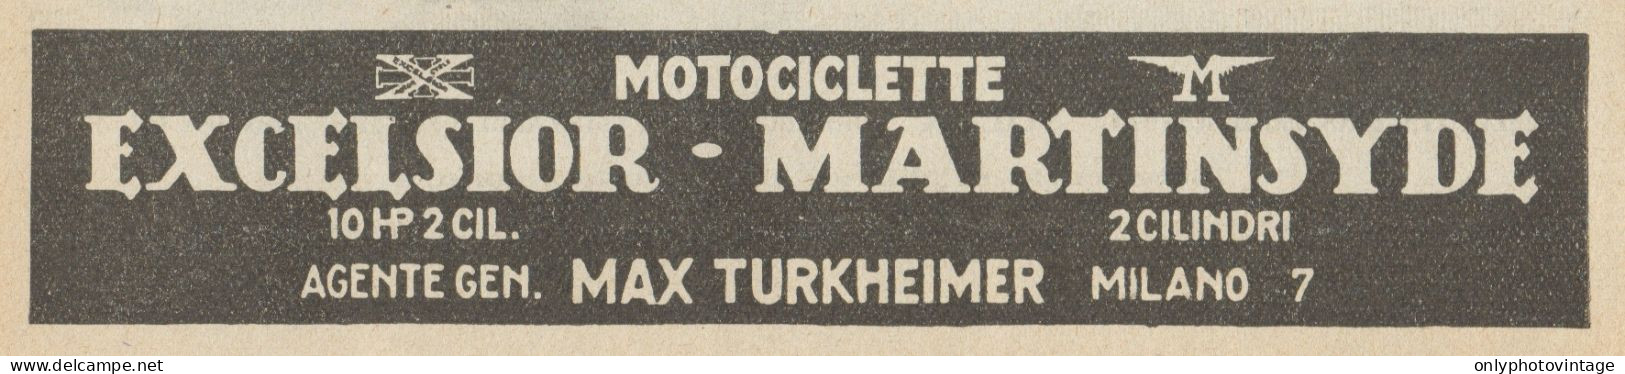 Motociclette EXCELSIOR-MARTINSYDE - Pubblicità D'epoca - 1923 Old Advert - Publicidad